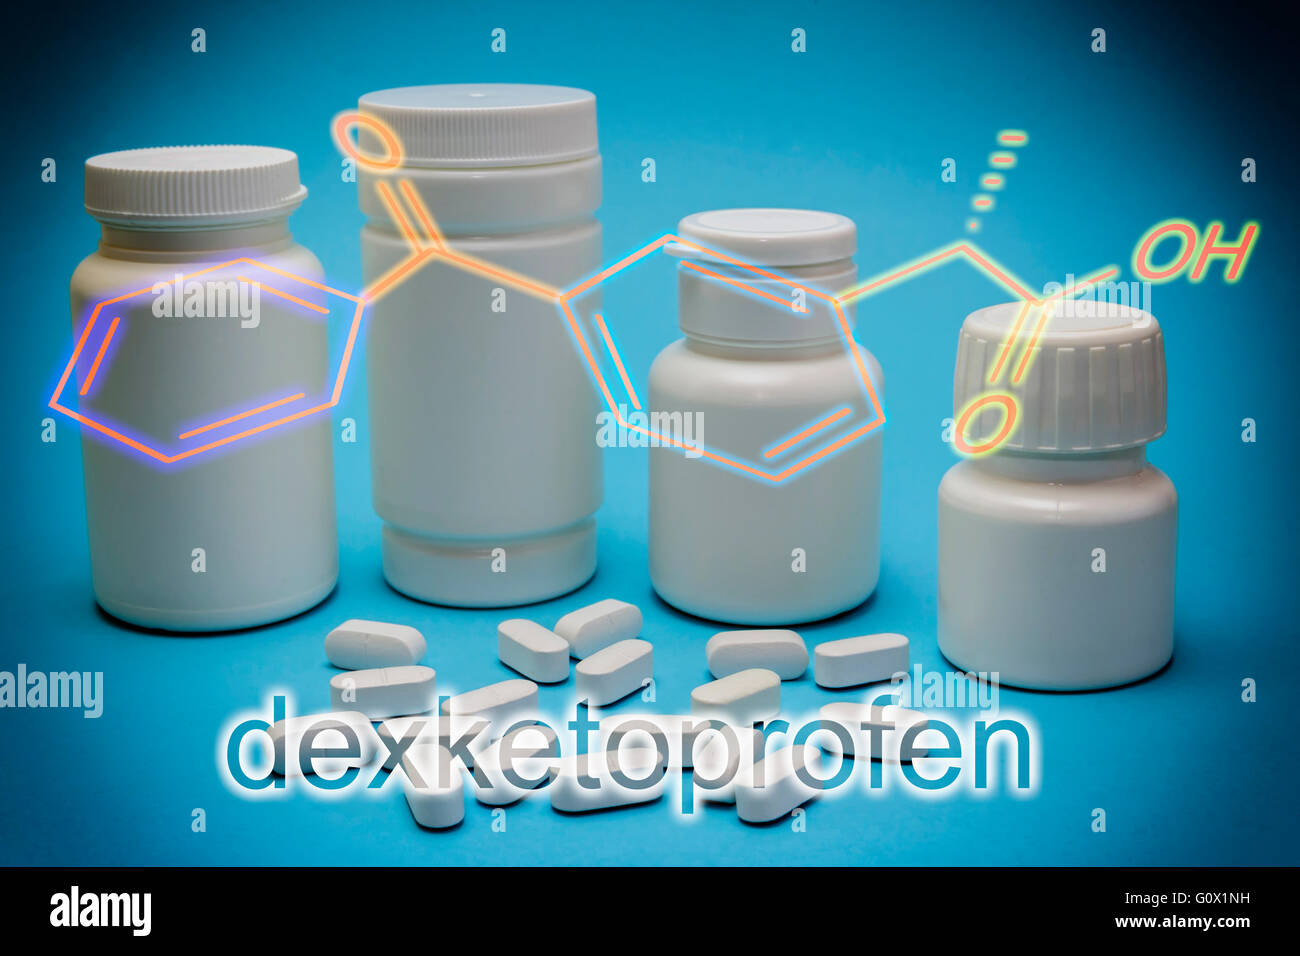 Formula chimica del Dexketoprofen, antinfiammatori non steroidei farmaco con azione analgesica Foto Stock